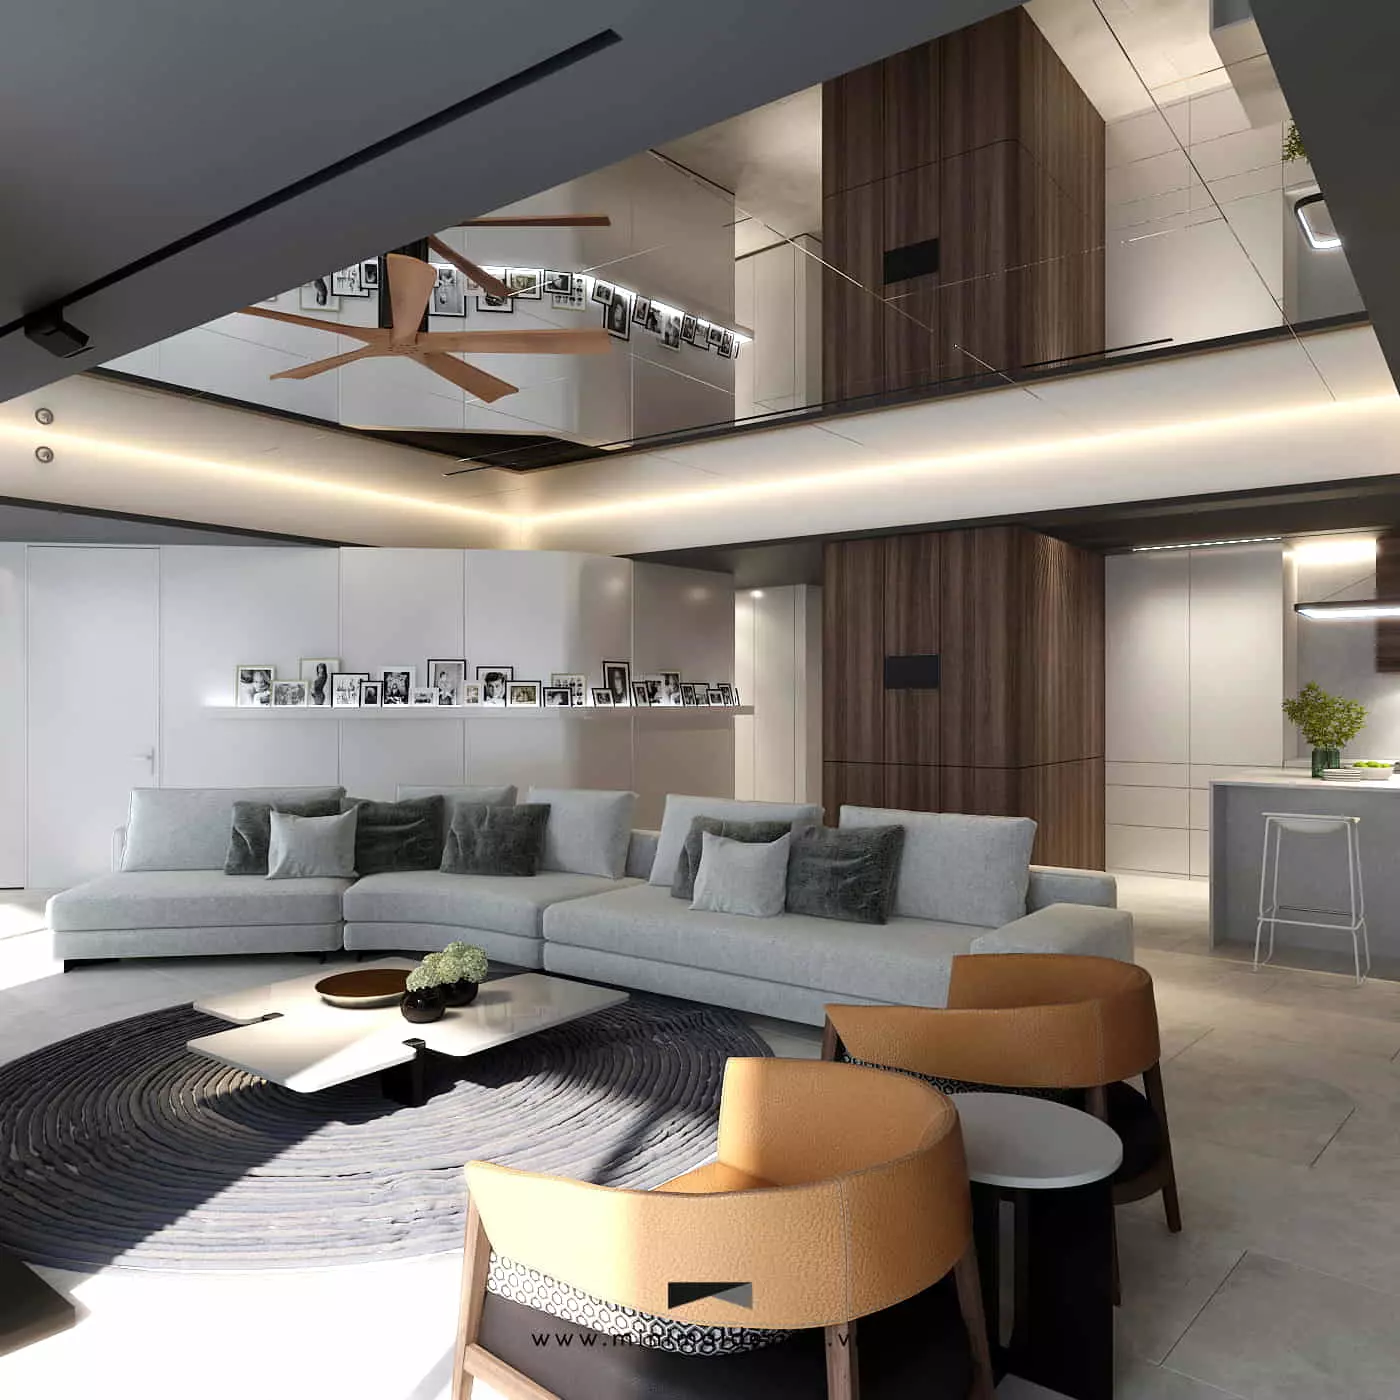 Thiết kế thi công nội thất căn hộ tối giản đẹp và ấn tượng cùng với các gợi ý dưới đây sẽ giúp bạn có thêm ý tưởng biến đổi không gian sống của mình.